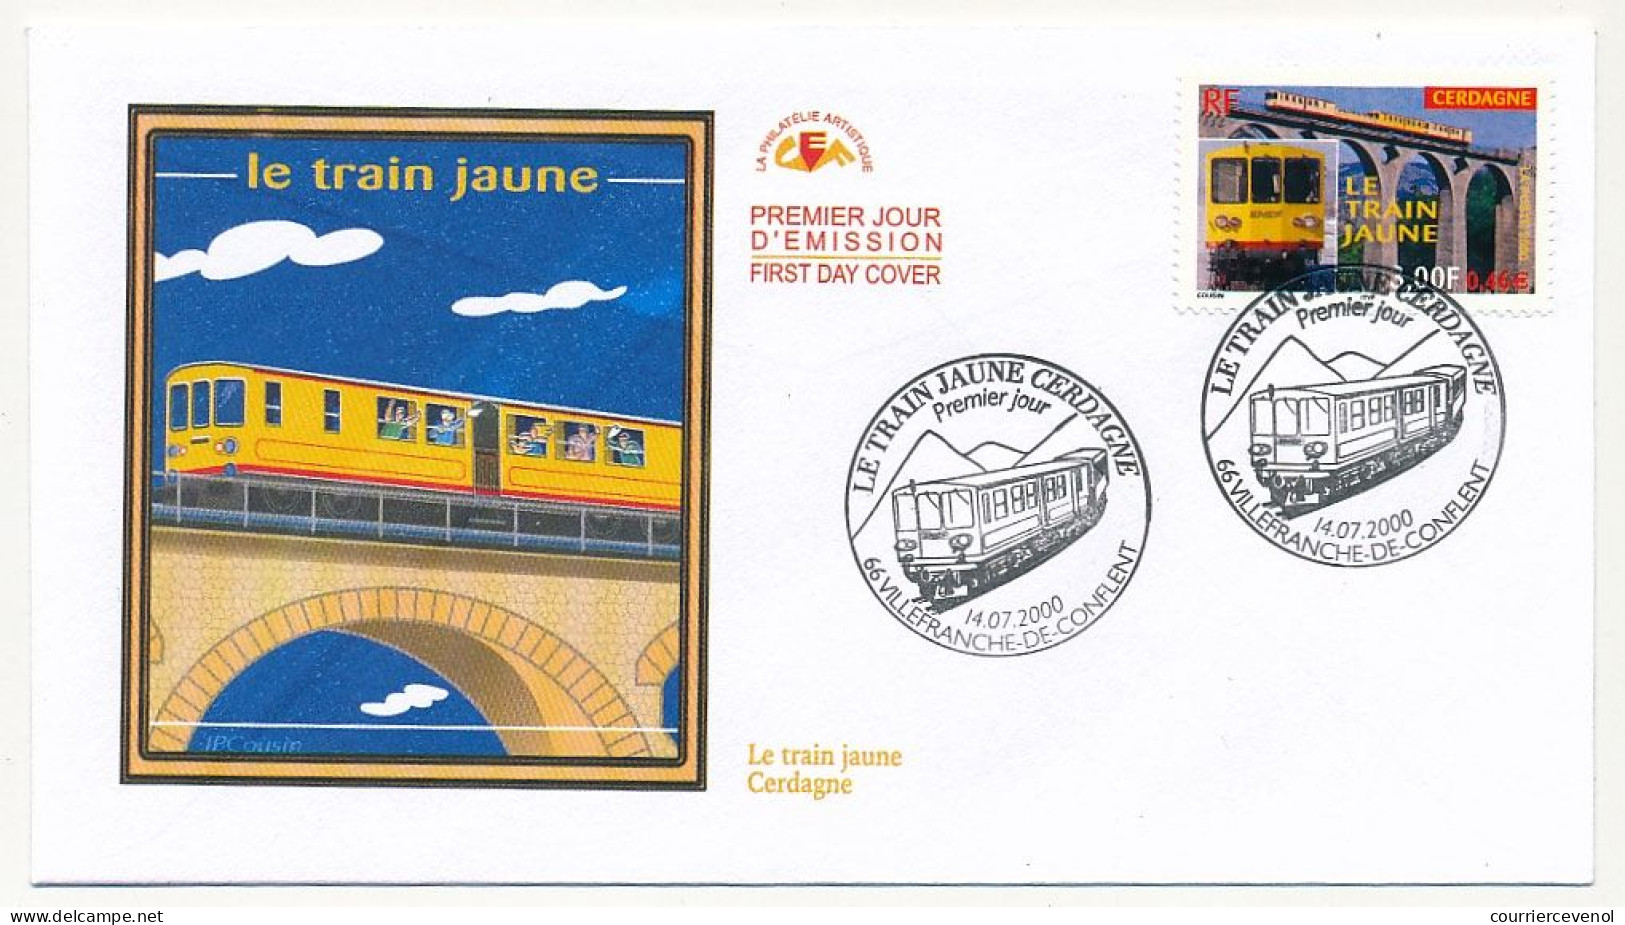 FRANCE - FDC 3,00F/0,46e Le Train Jaune Cerdagne - 66 Villefranche De Conflent 14/07/2000 - 2000-2009